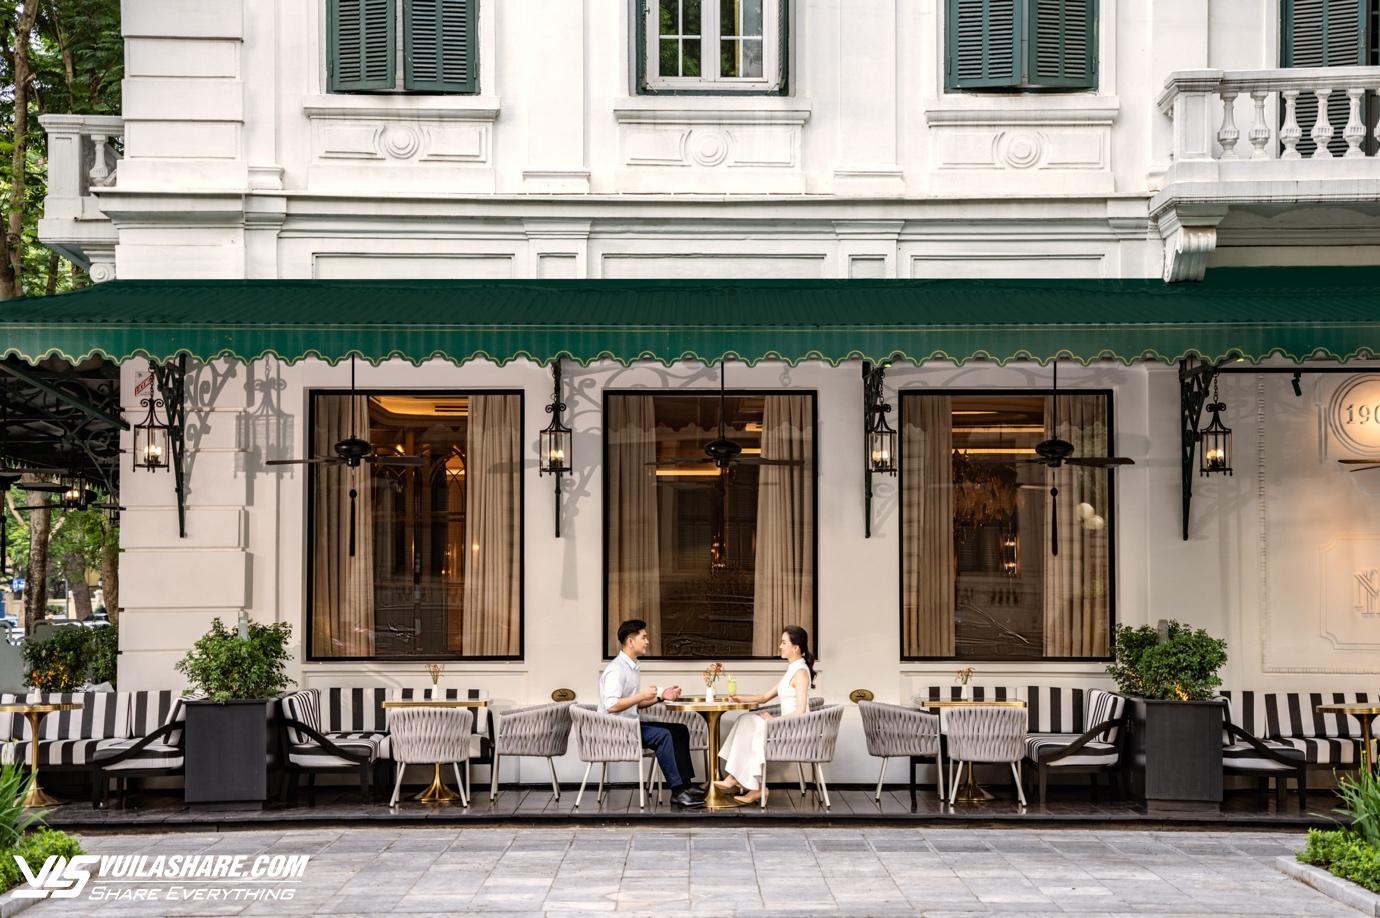 Khám phá những khách sạn tốt nhất ở Việt Nam được tạp chí Mỹ vinh danh- Ảnh 1.